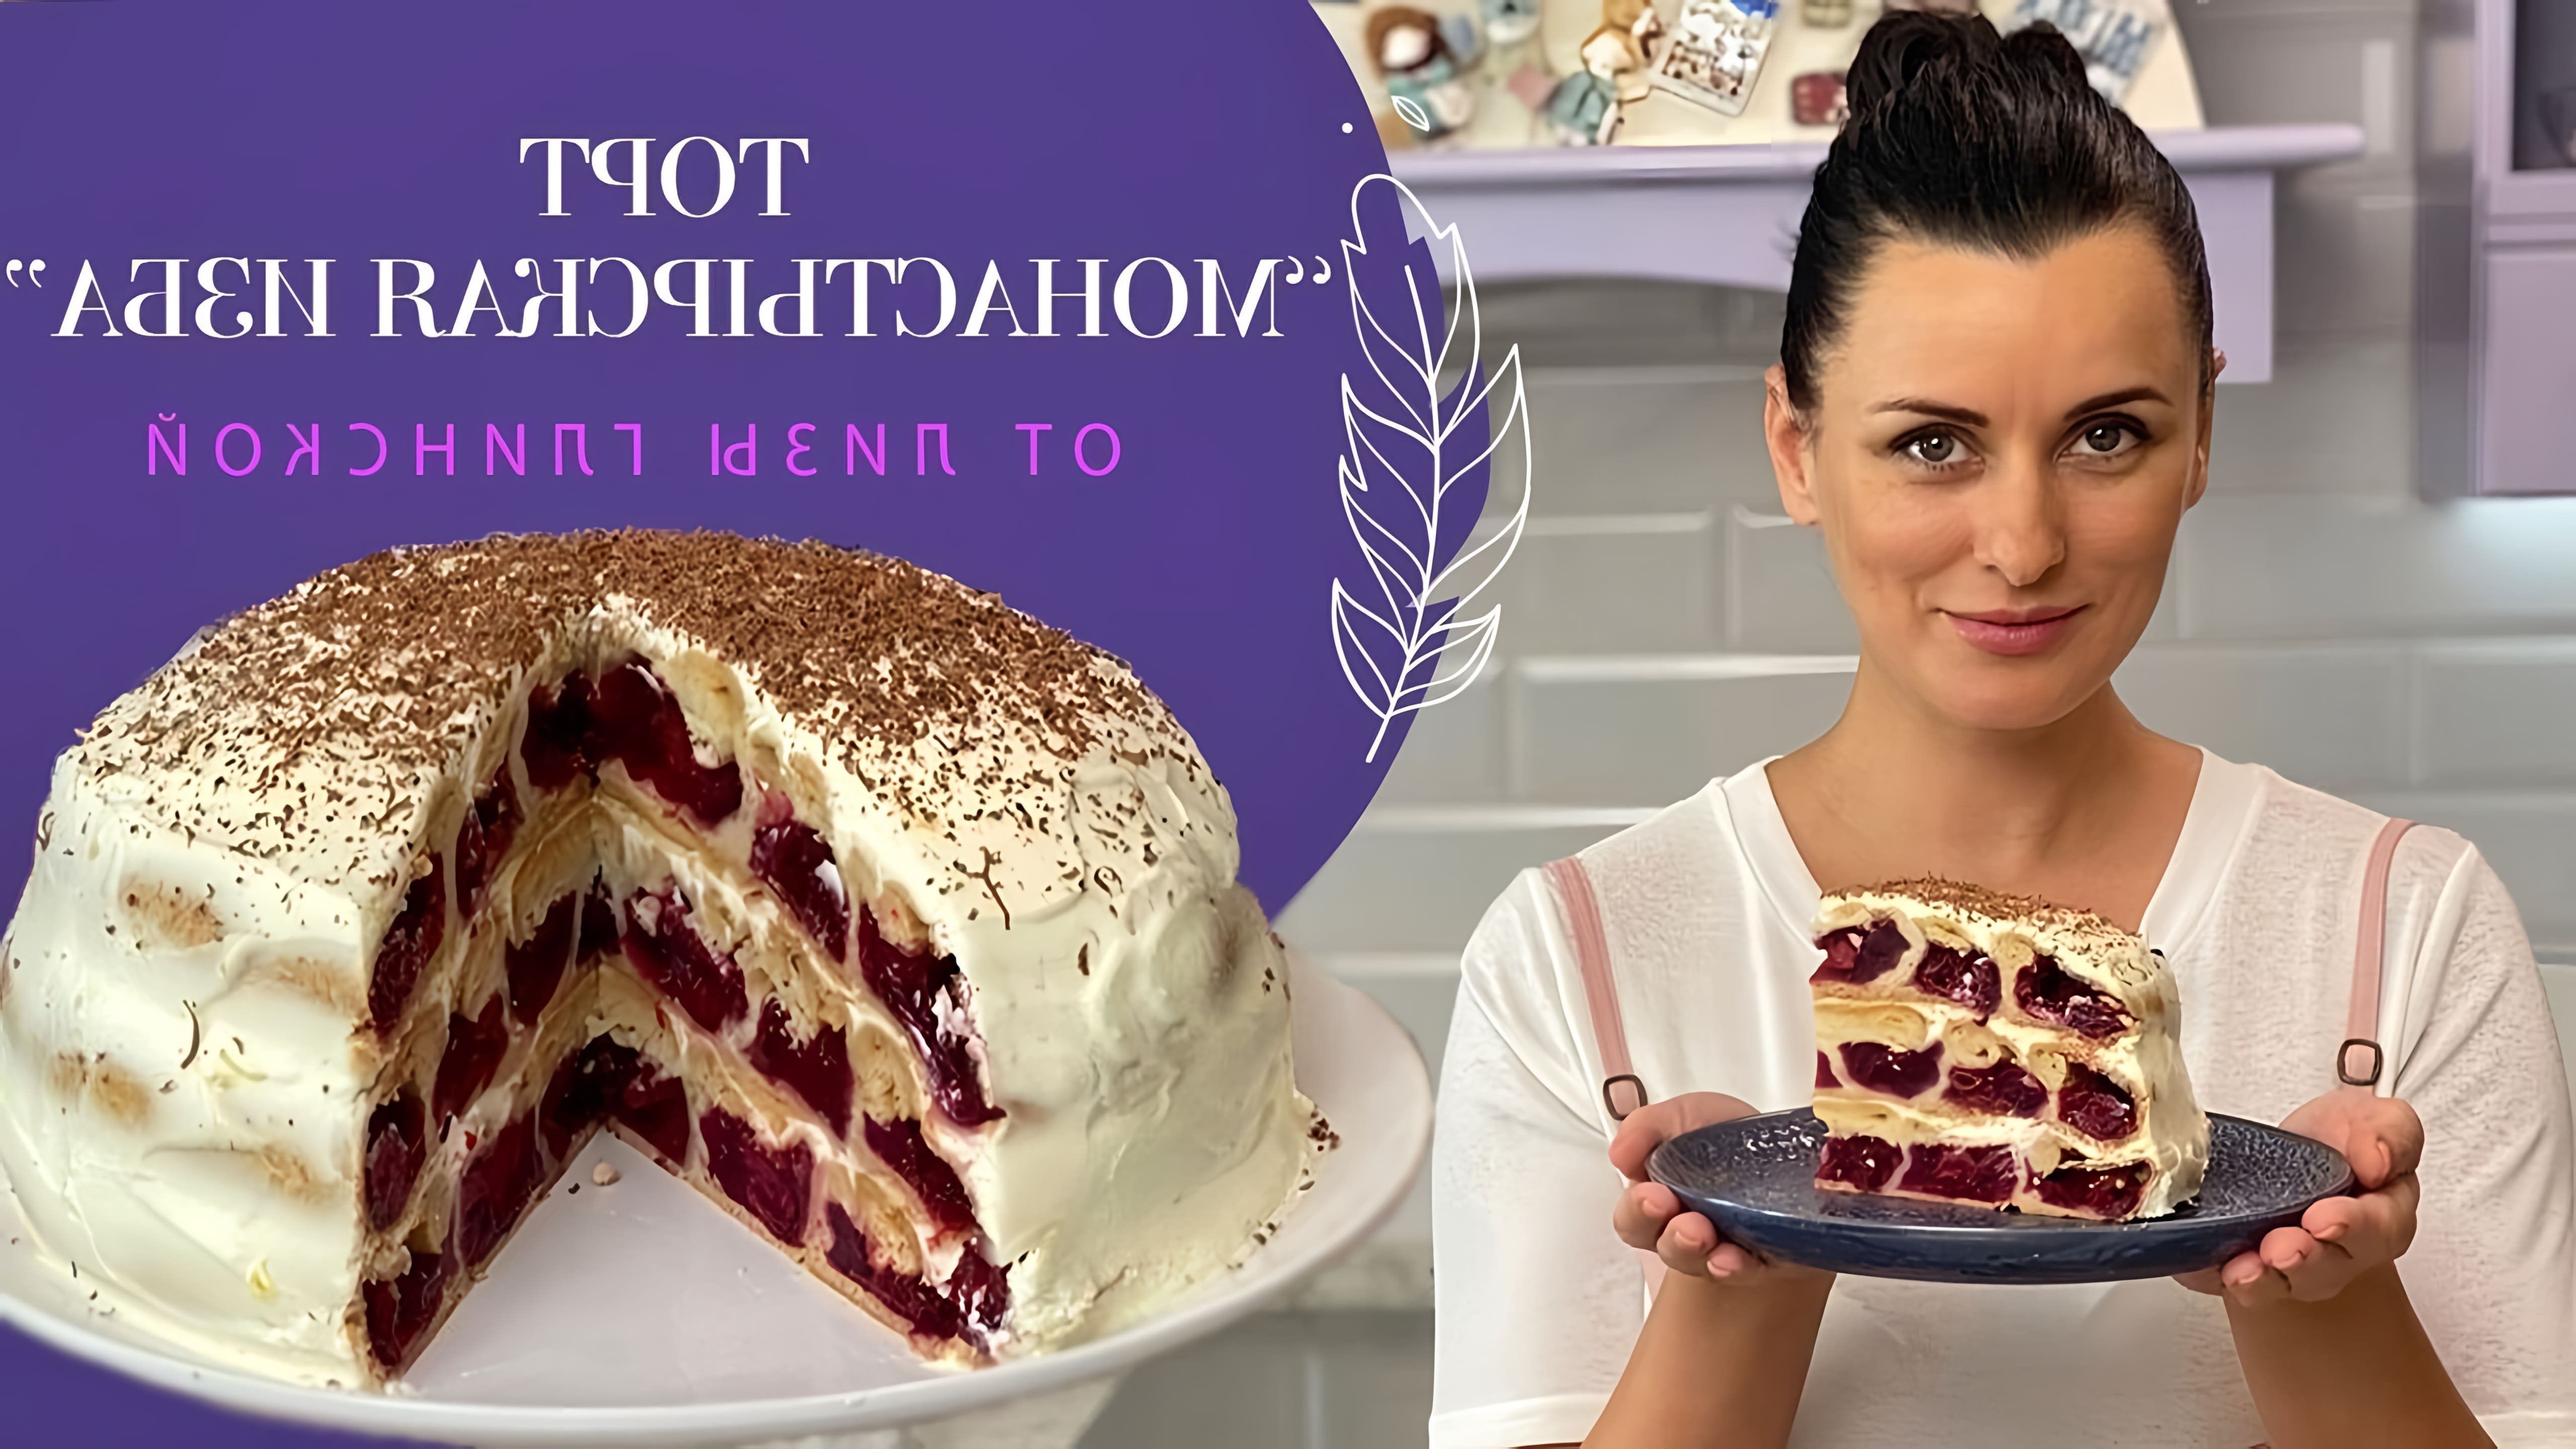 Видео рецепт традиционного русского торта под названием "Хижина монастыря"